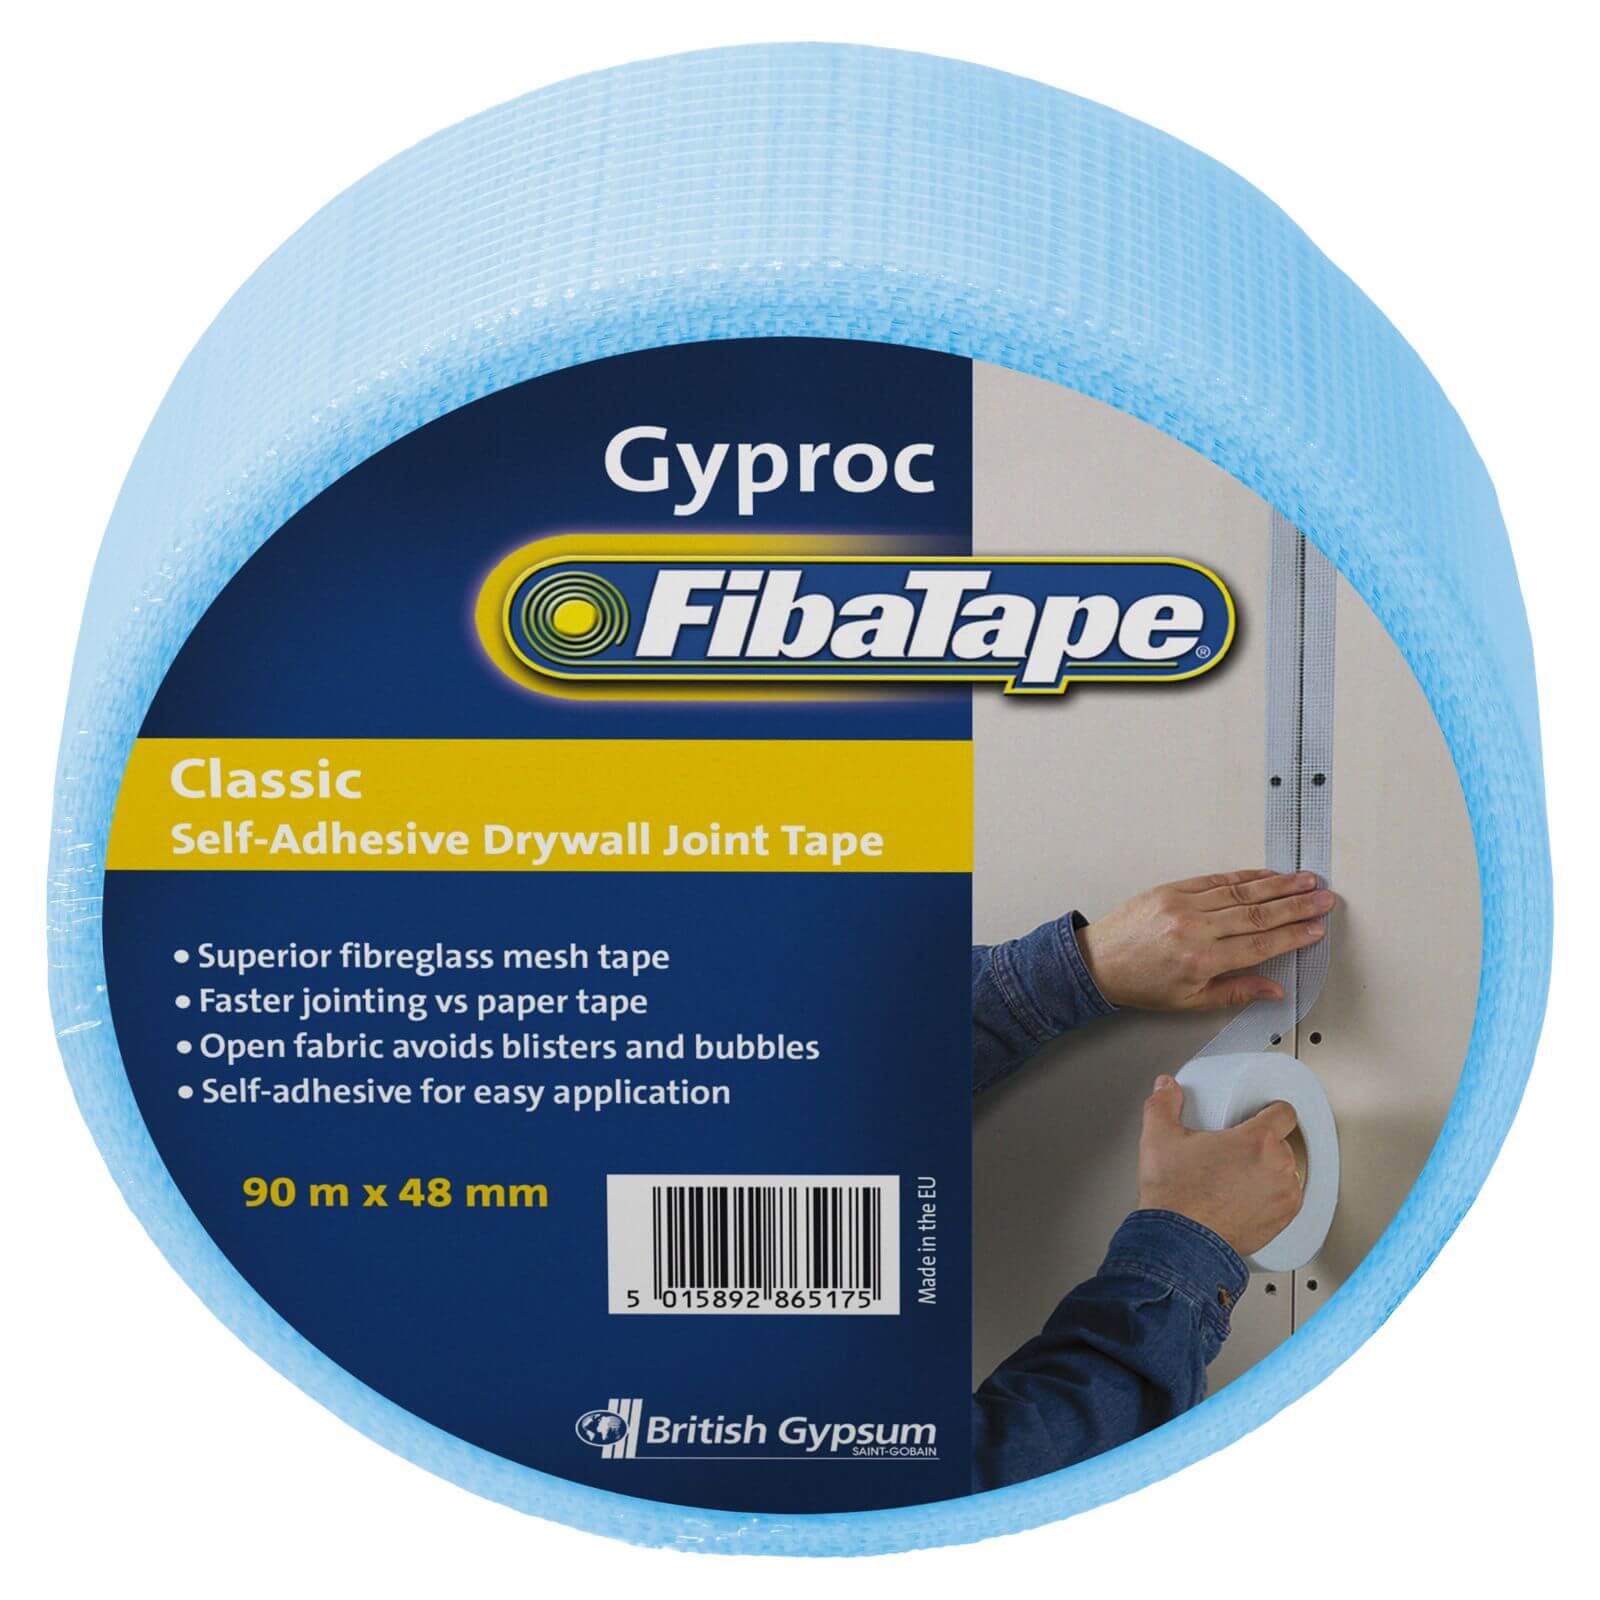 Gyproc Fibatape Classic Drywall Tape - 90m x 48mm